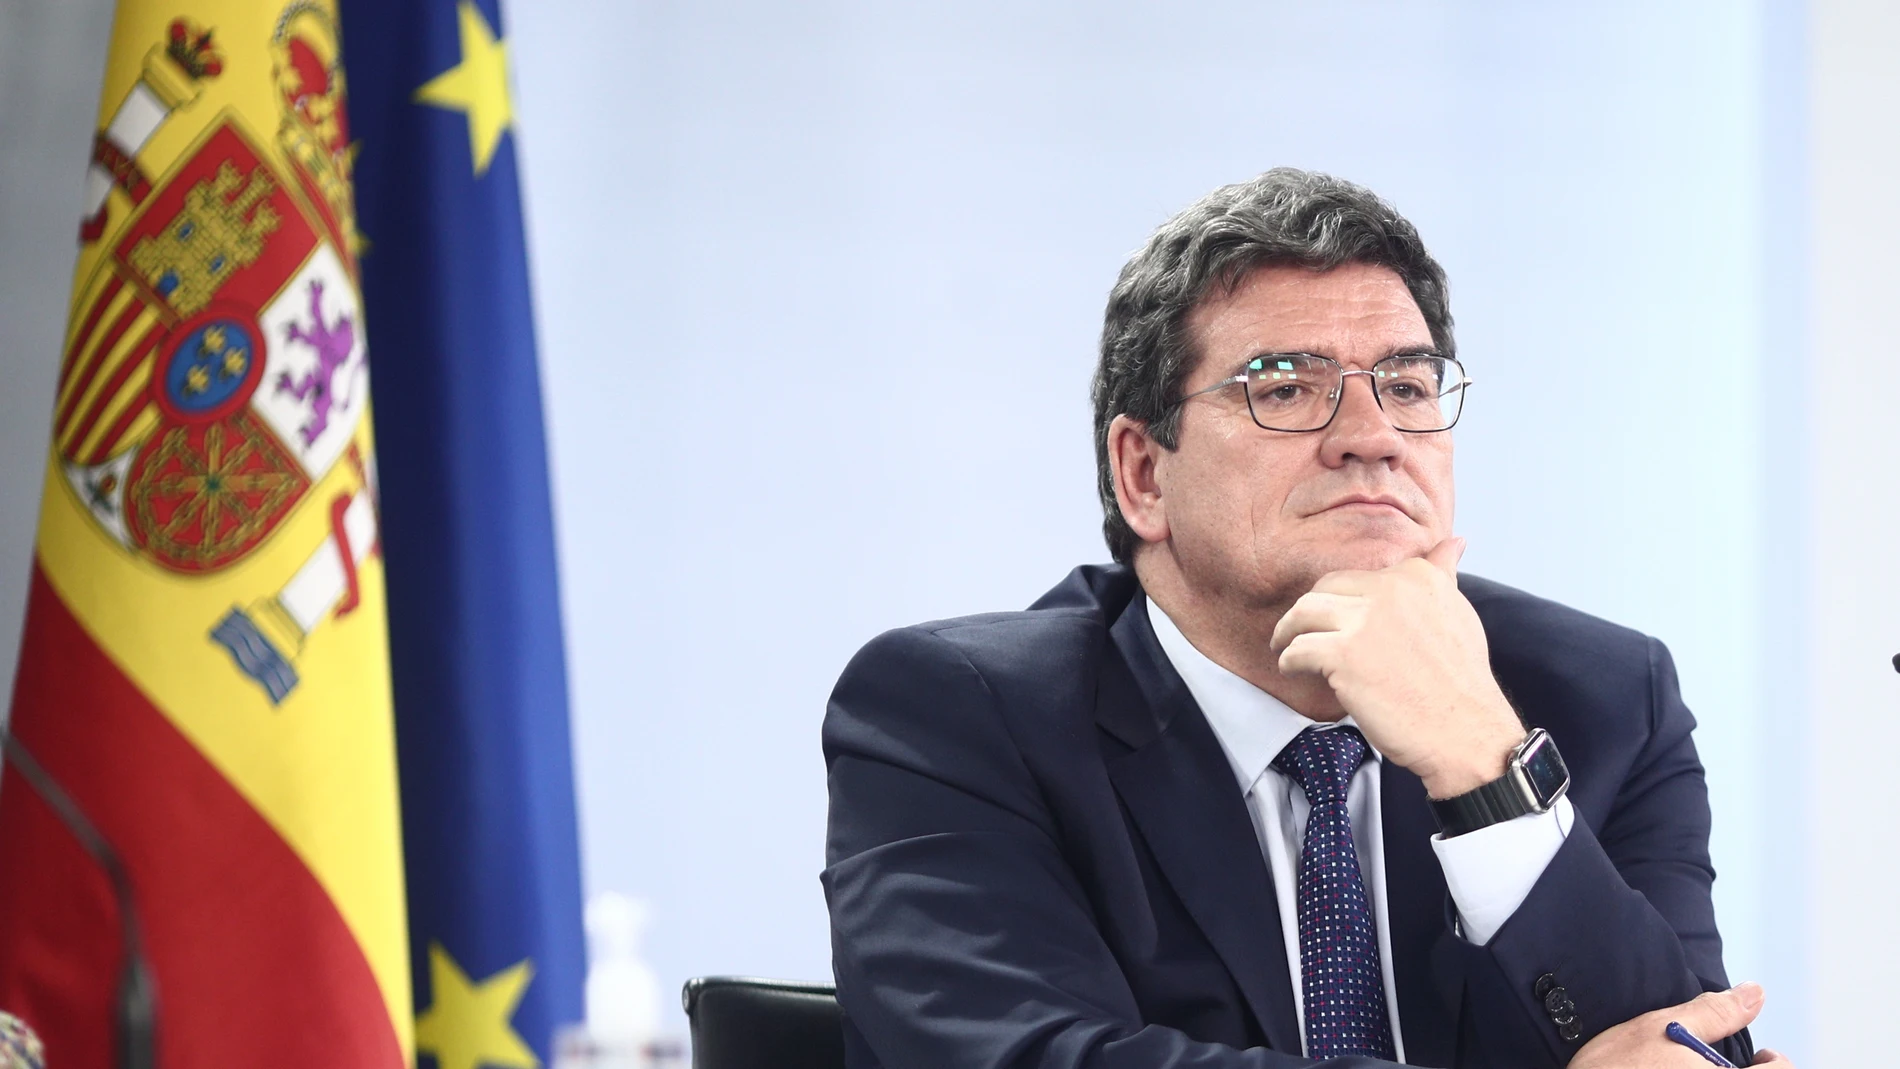 El ministro de Inclusión, Seguridad Social y Migraciones, José Luis Escrivá, durante una rueda de prensa posterior al Consejo de Ministros, en la Moncloa